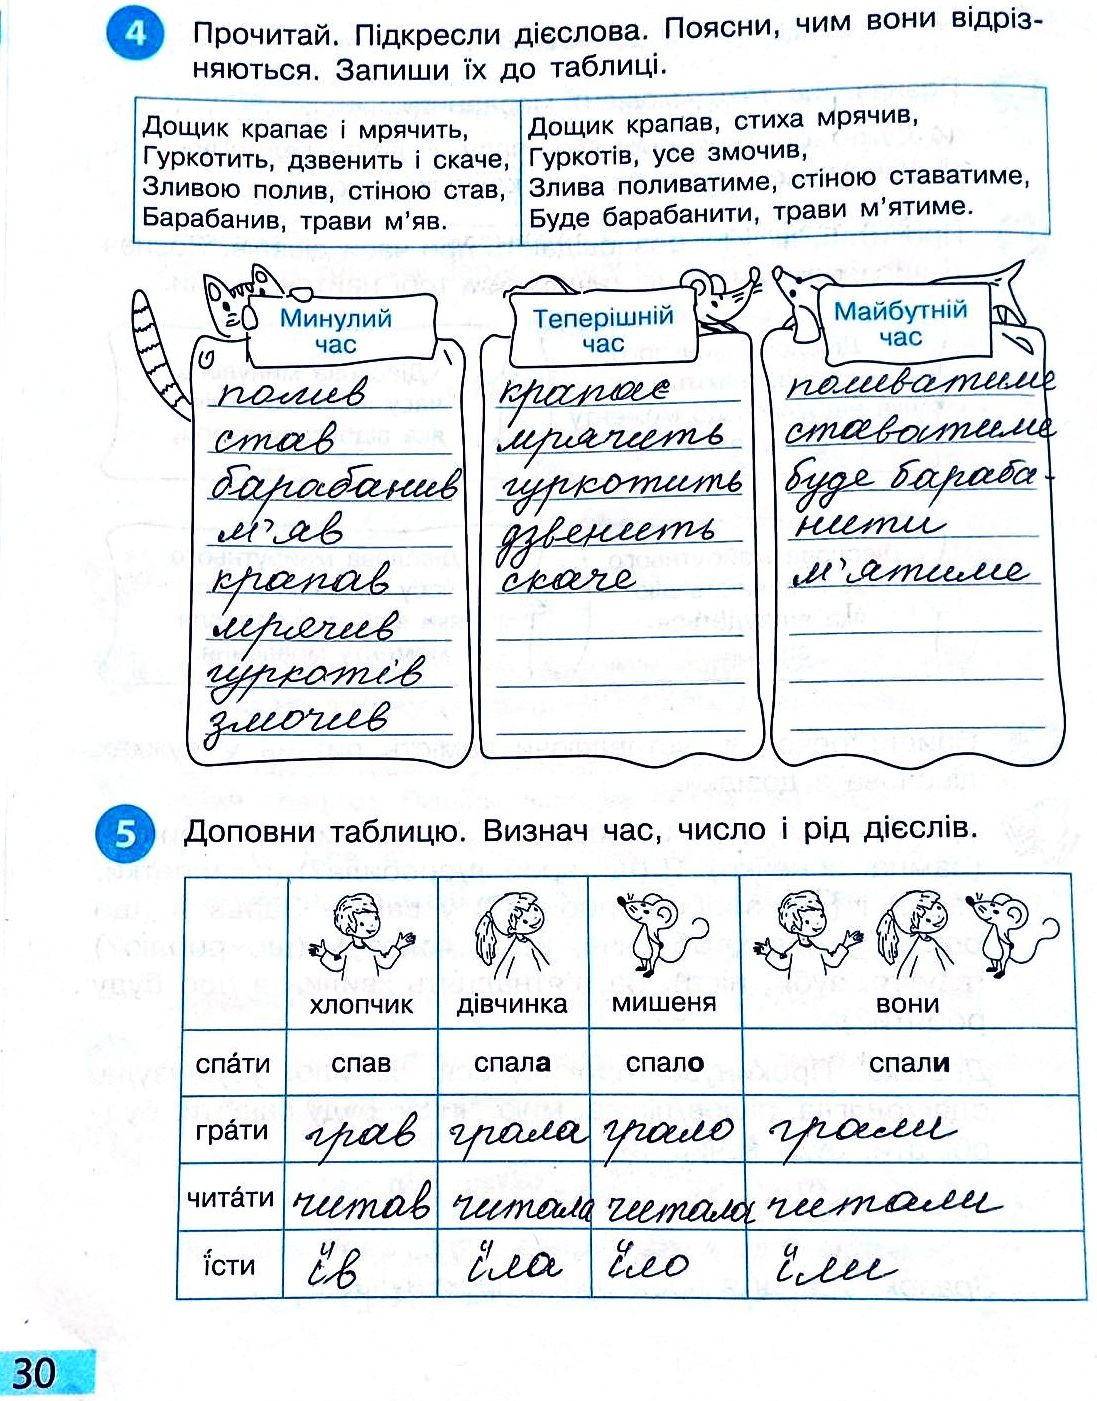 Сторінка 30 частина 2 гдз 3 клас робочий зошит українська мова Большакова